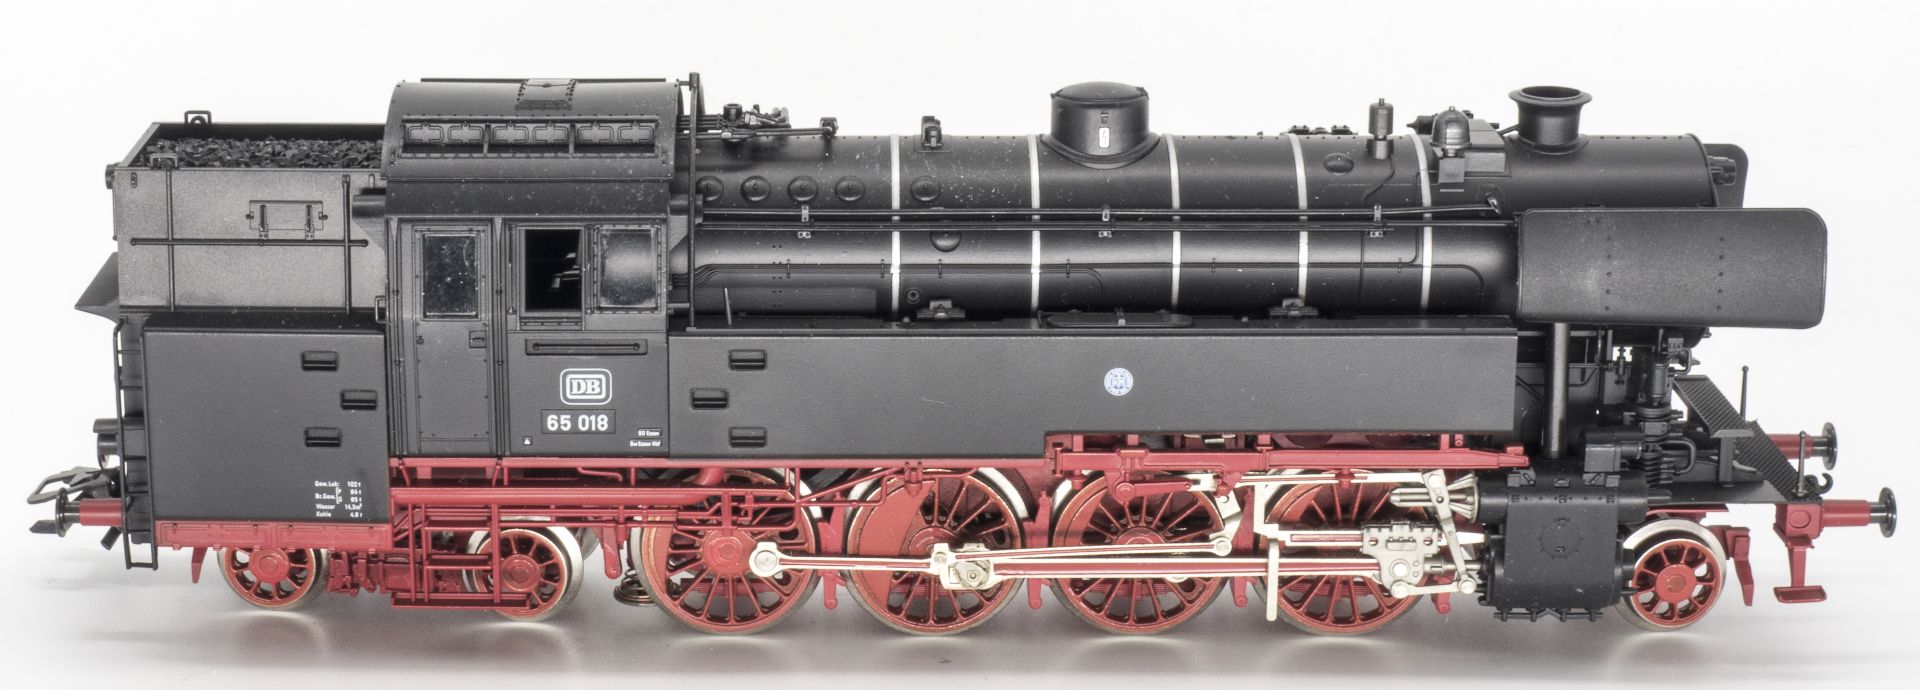 Fleischmann 4065, Dampflokomotive BR 65, BN 65 018. Spur H0. Ohne OVP. *.